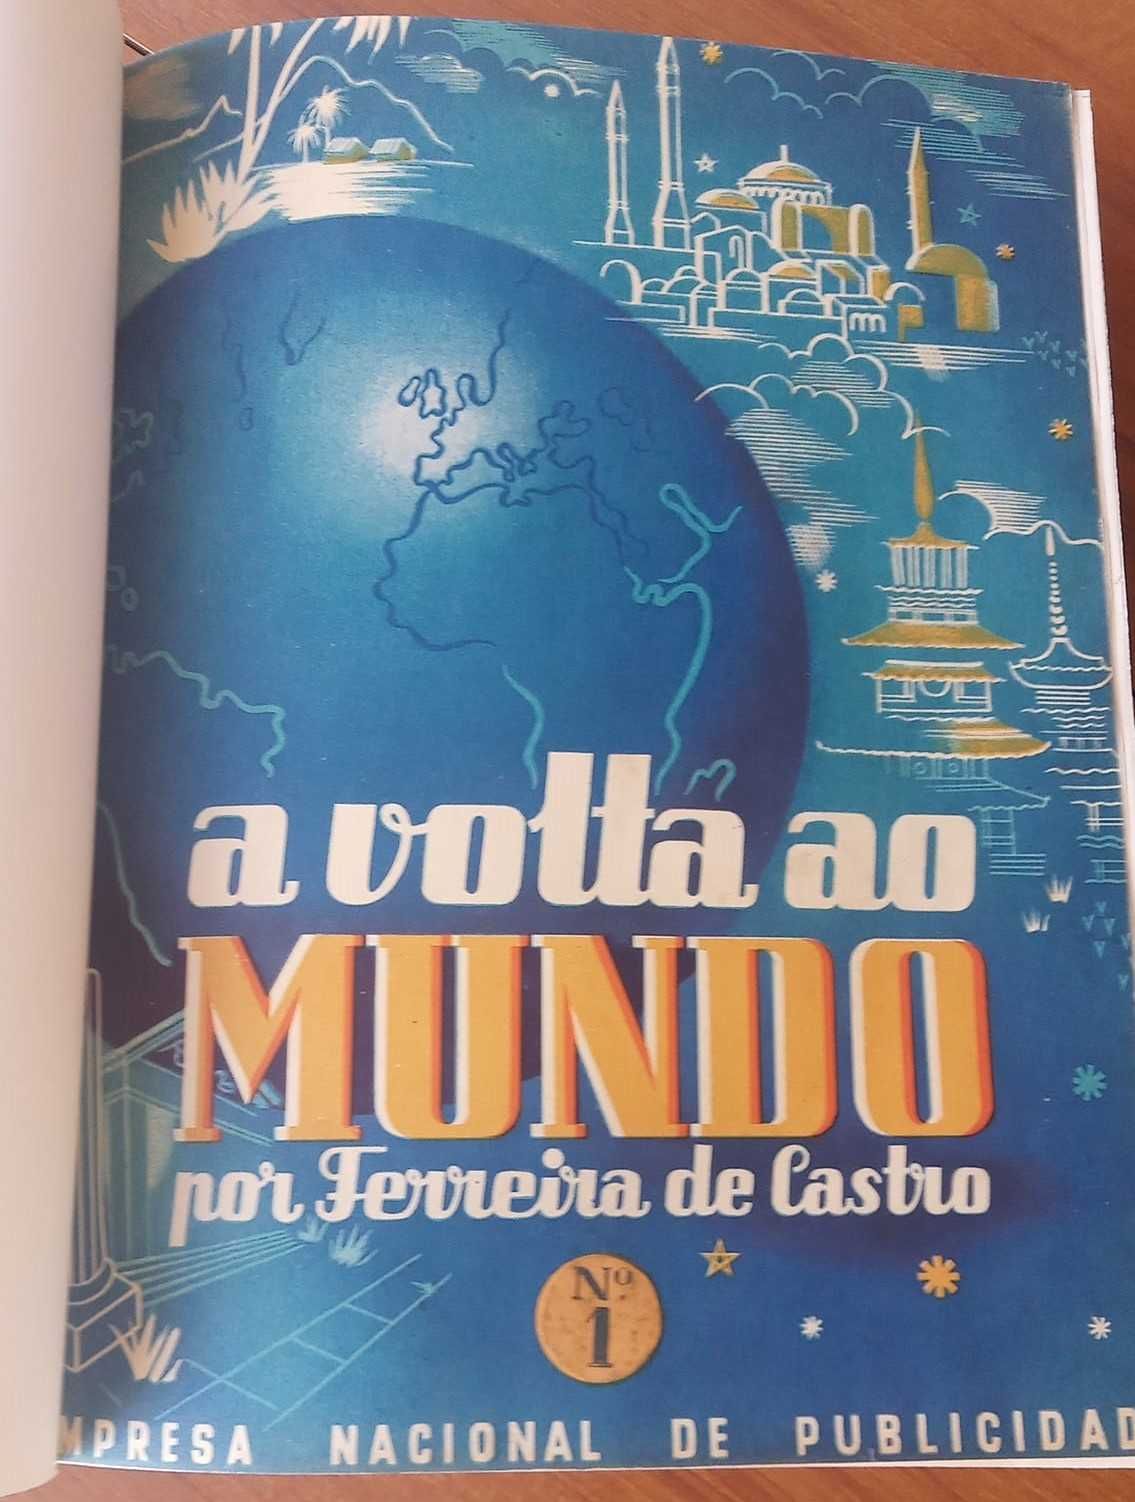 "A Volta ao Mundo", por Ferreira de Castro